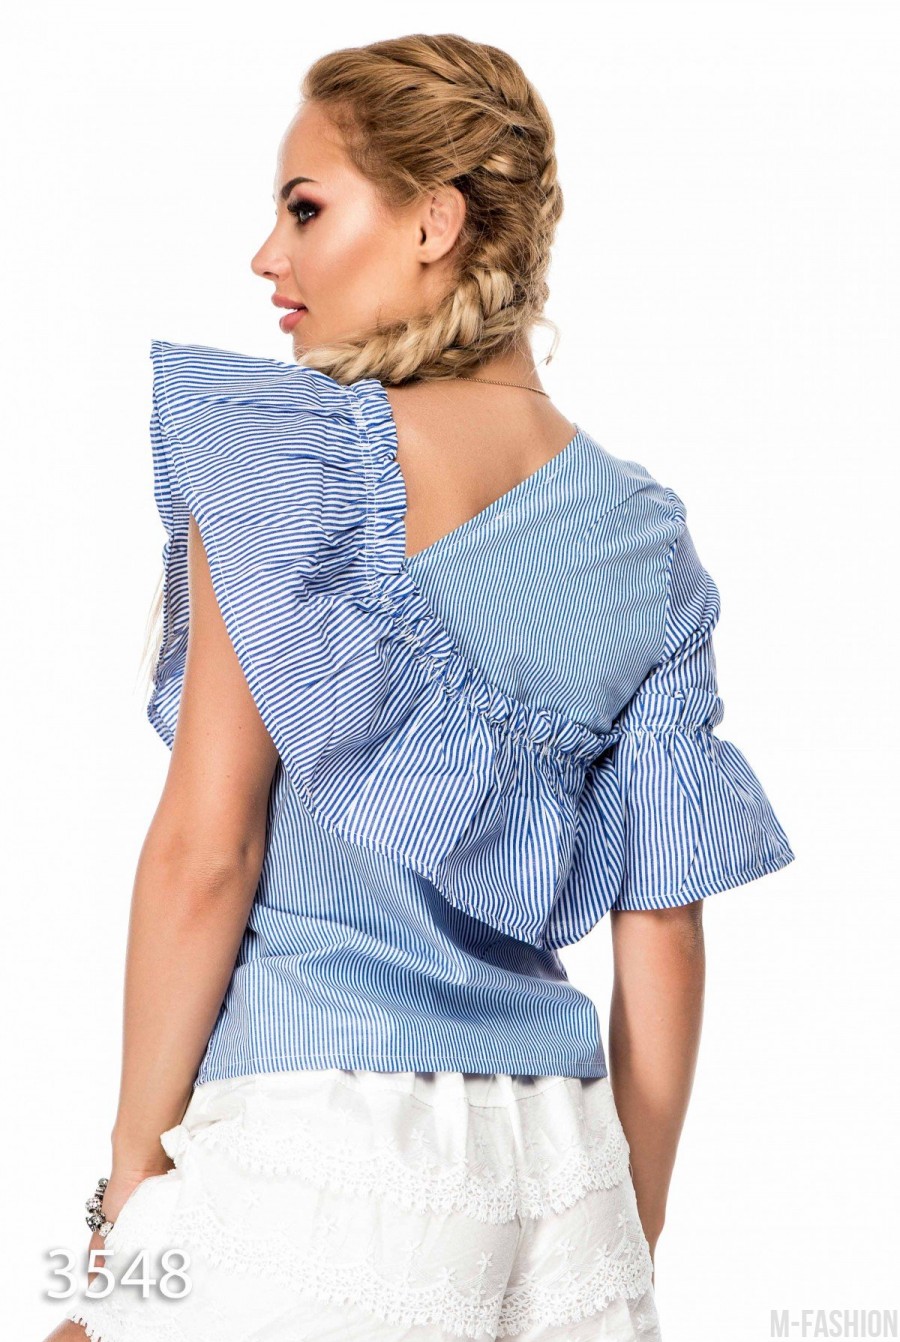 Летняя блузка в синюю и белую полоску асимметричного кроя со скошенным воланом- Фото 3